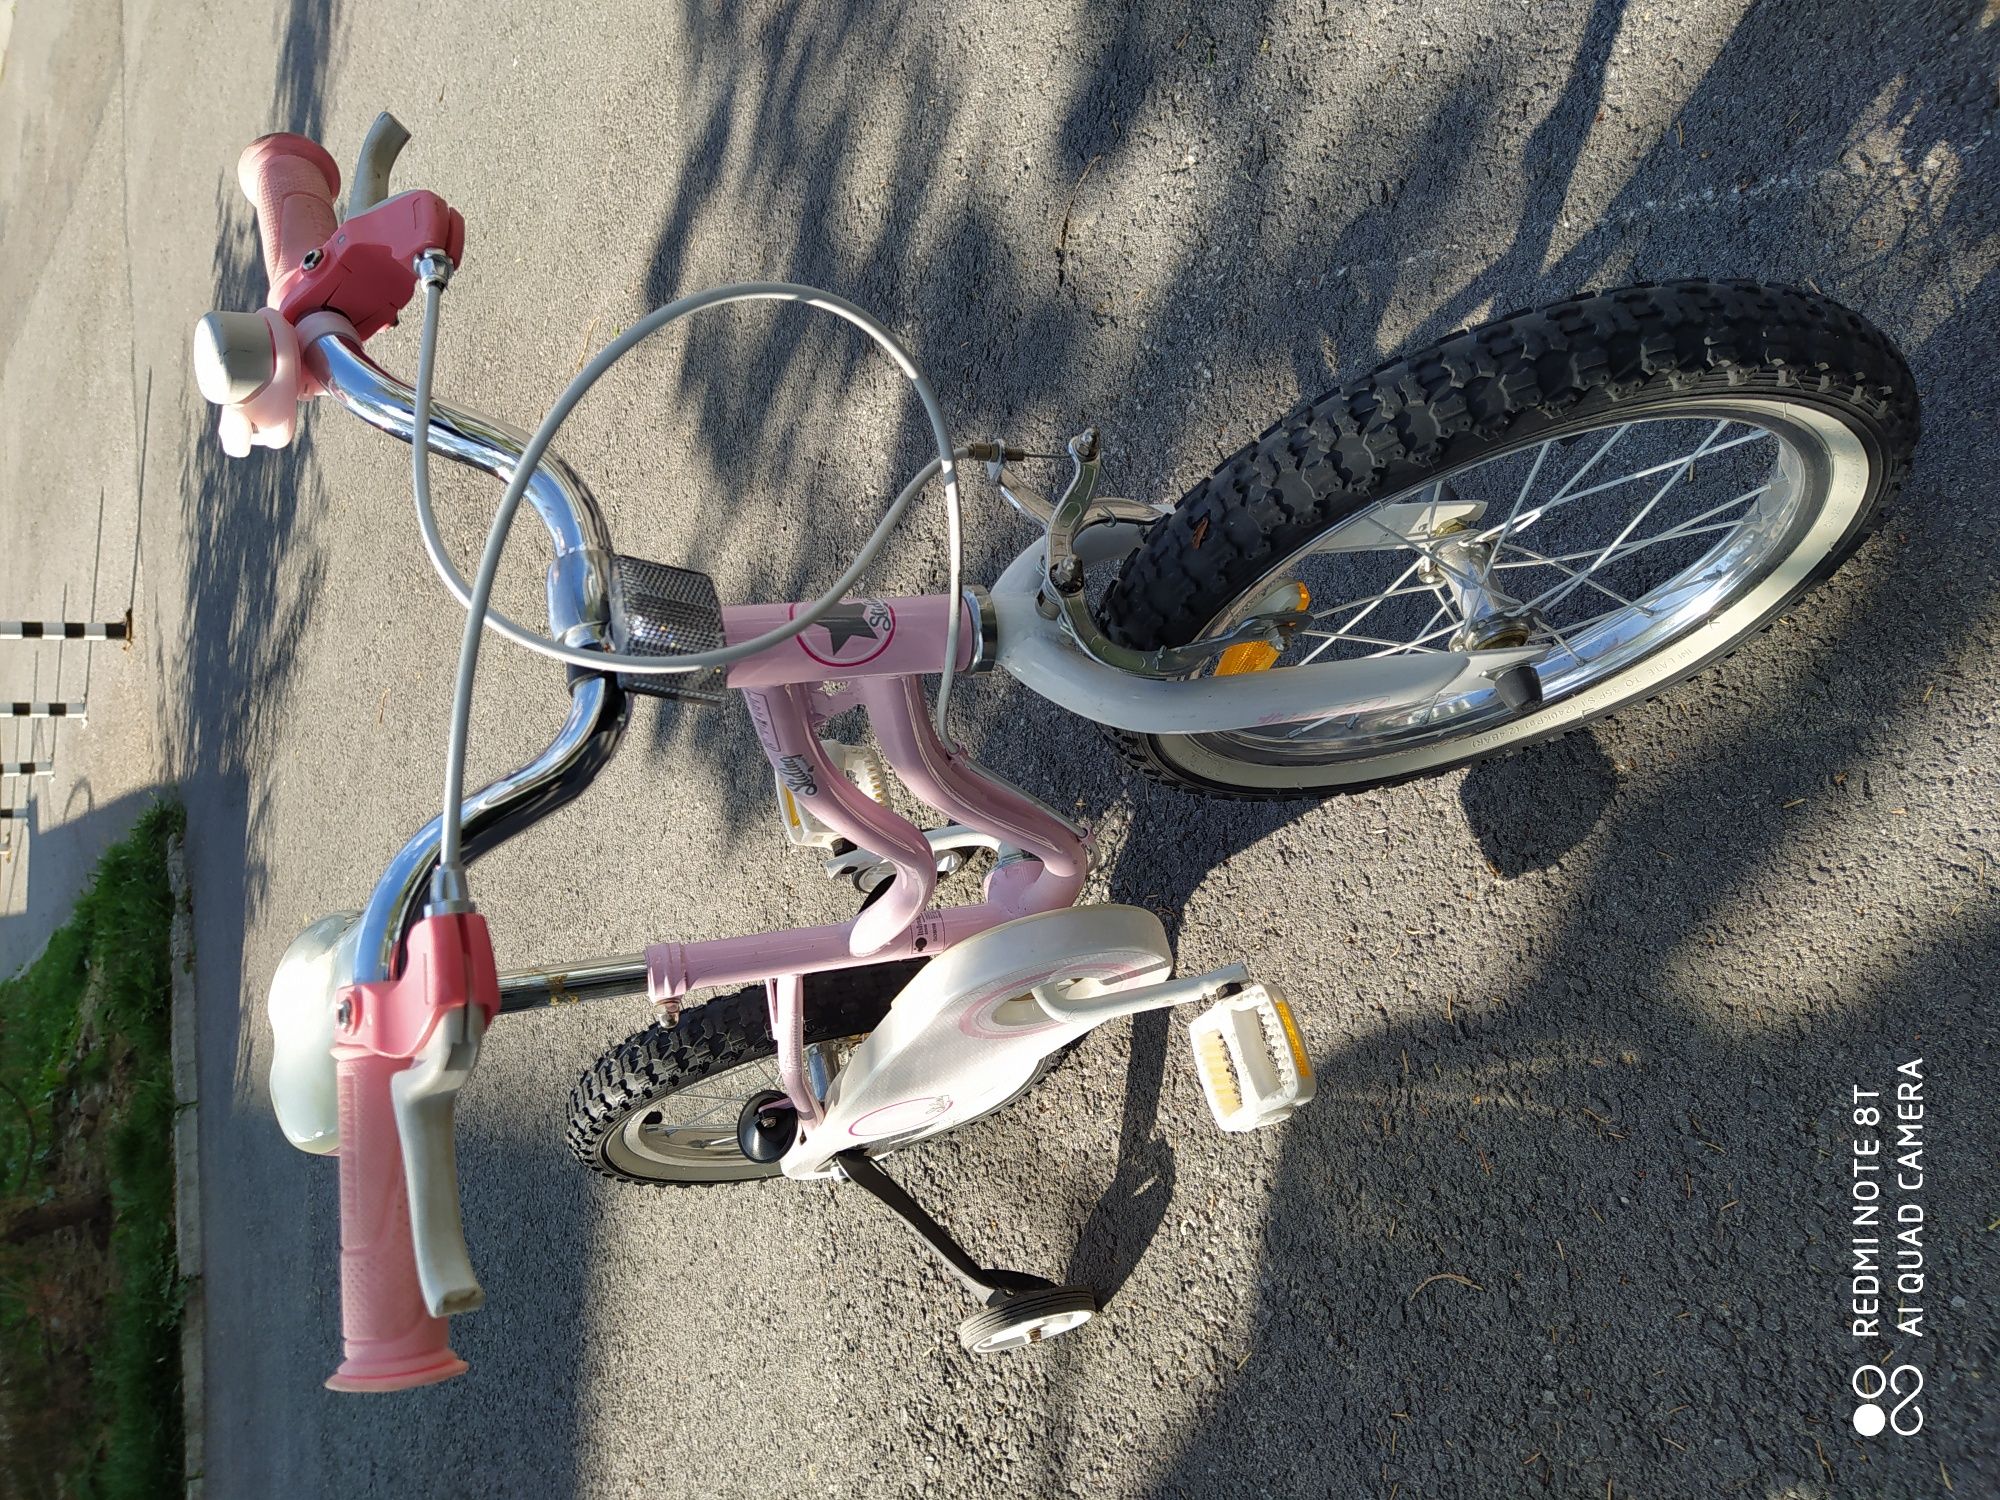 Детско колело за момиченце.